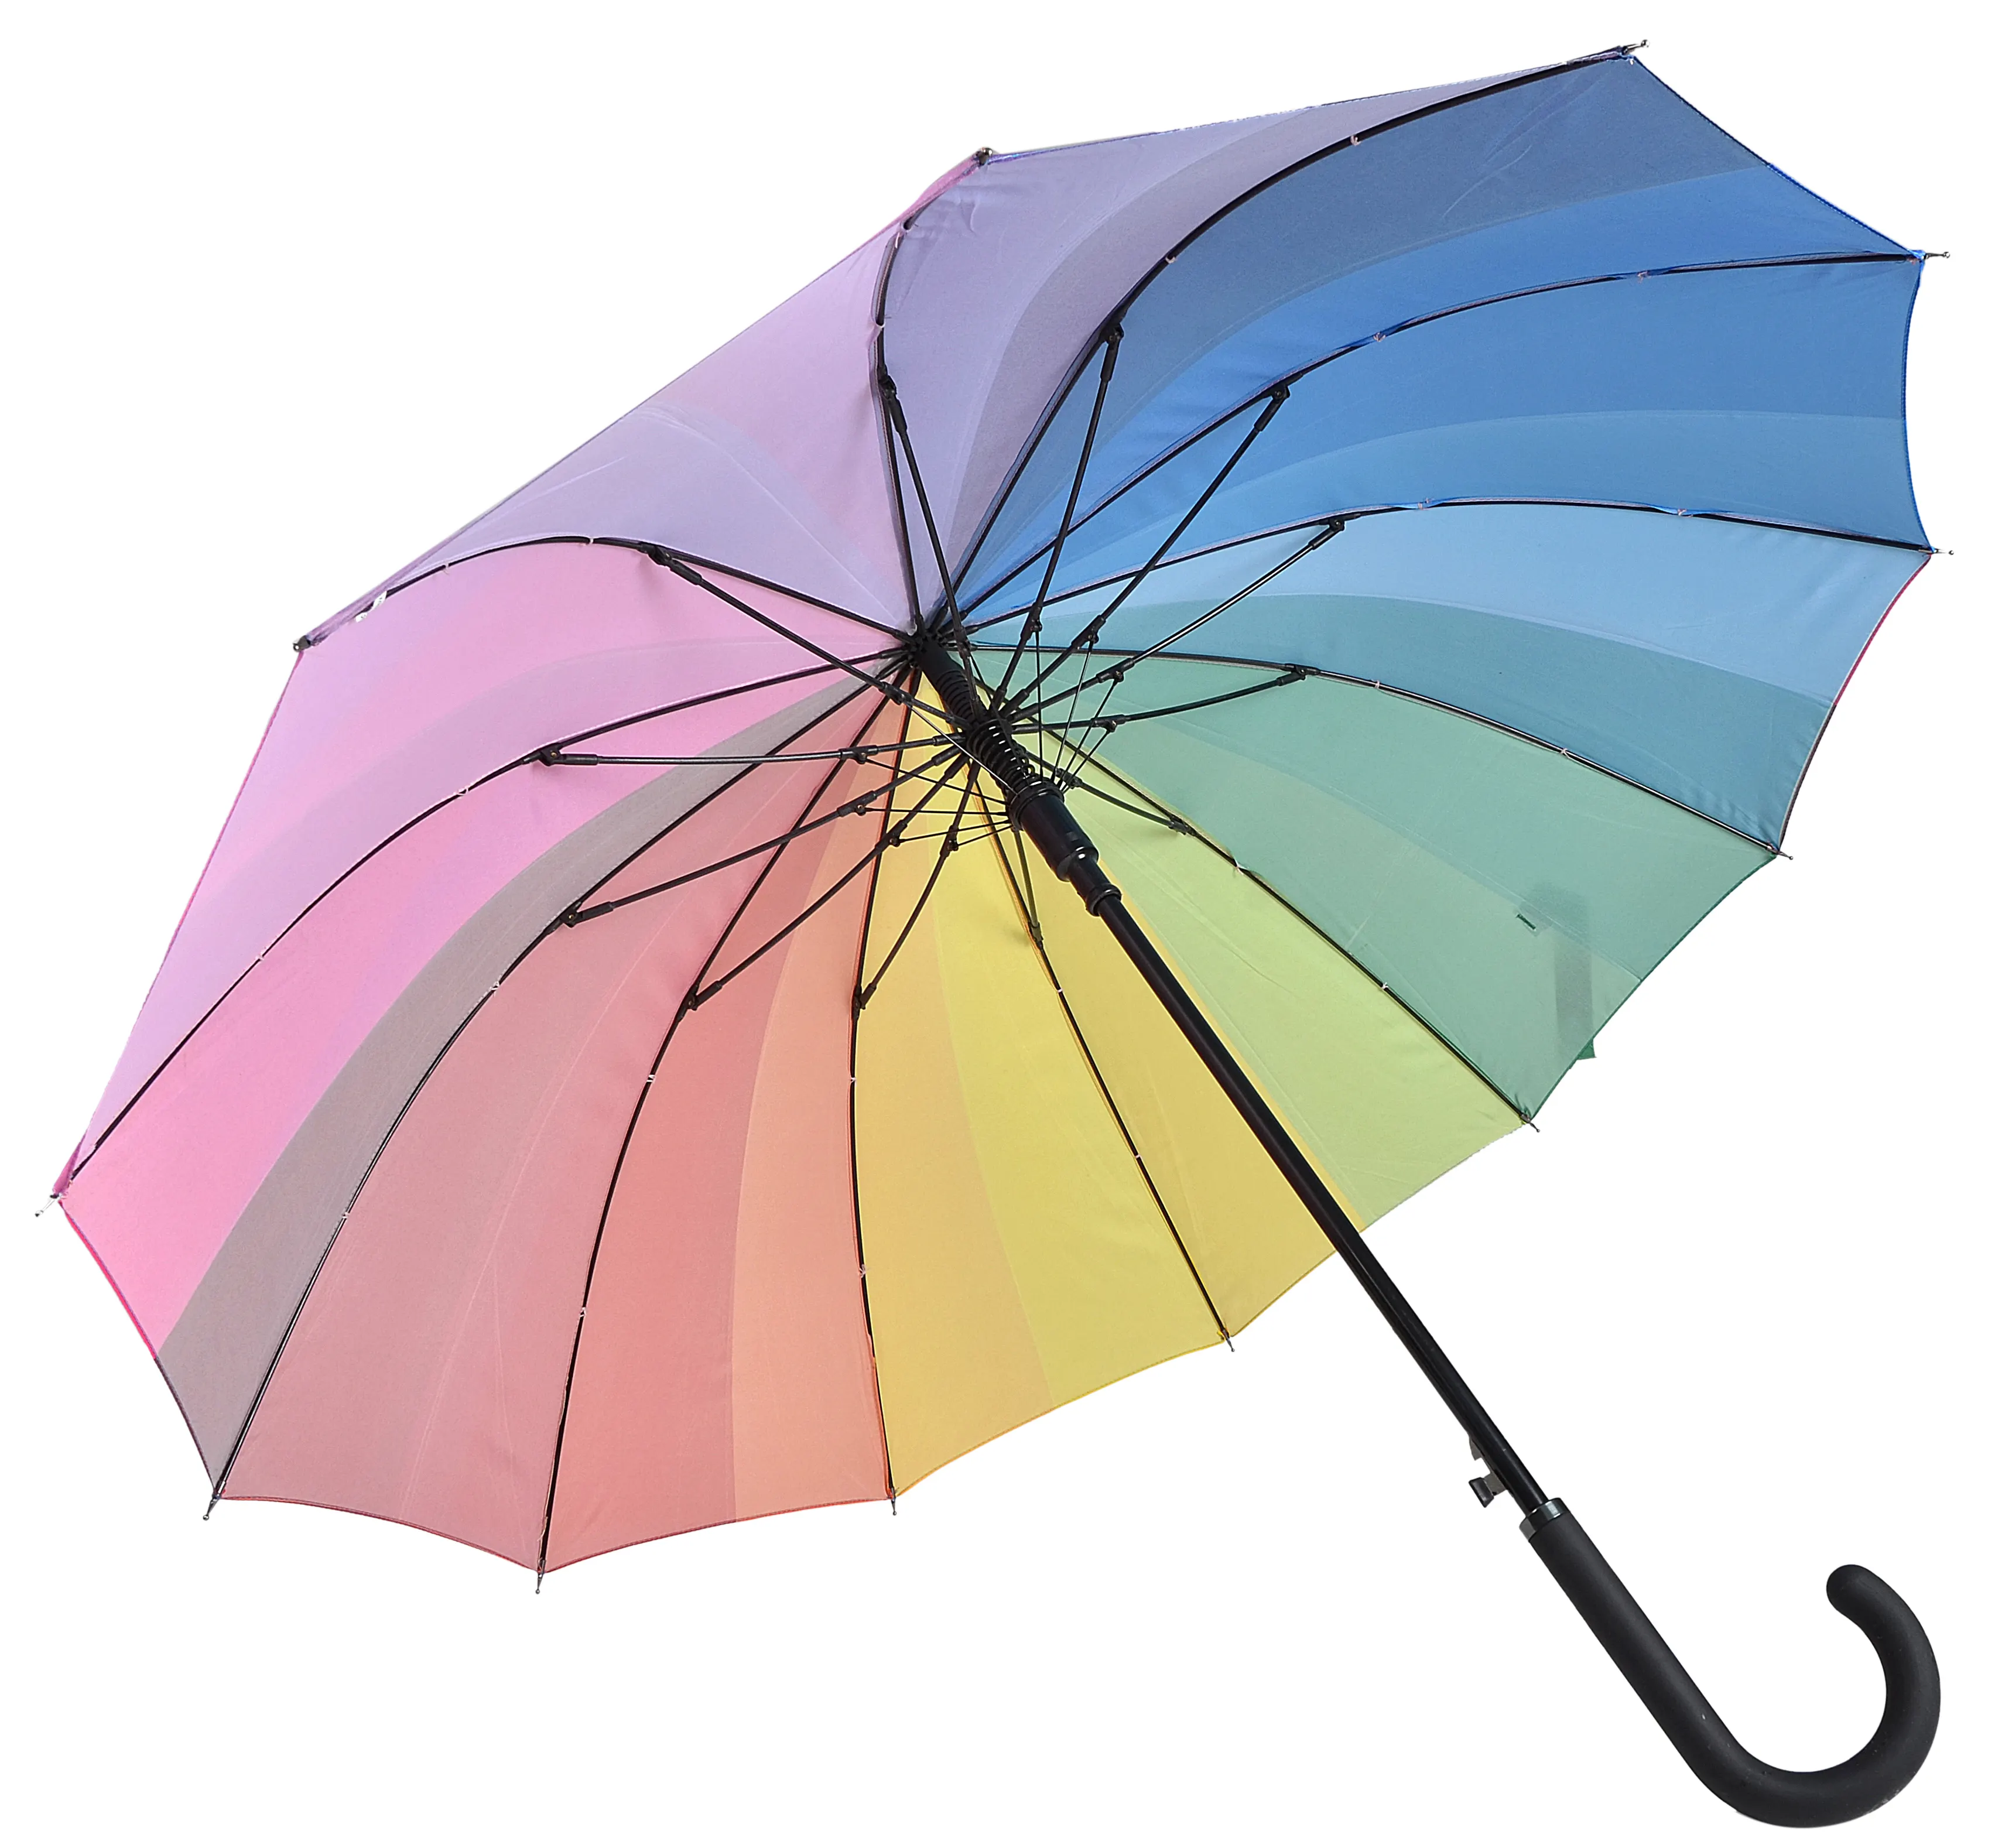 Взрослые зонтики. Зонтик Пайпер. Зонт цвет перламутра. Клин зонта. Радужный зонтик с чёрной одеждой.